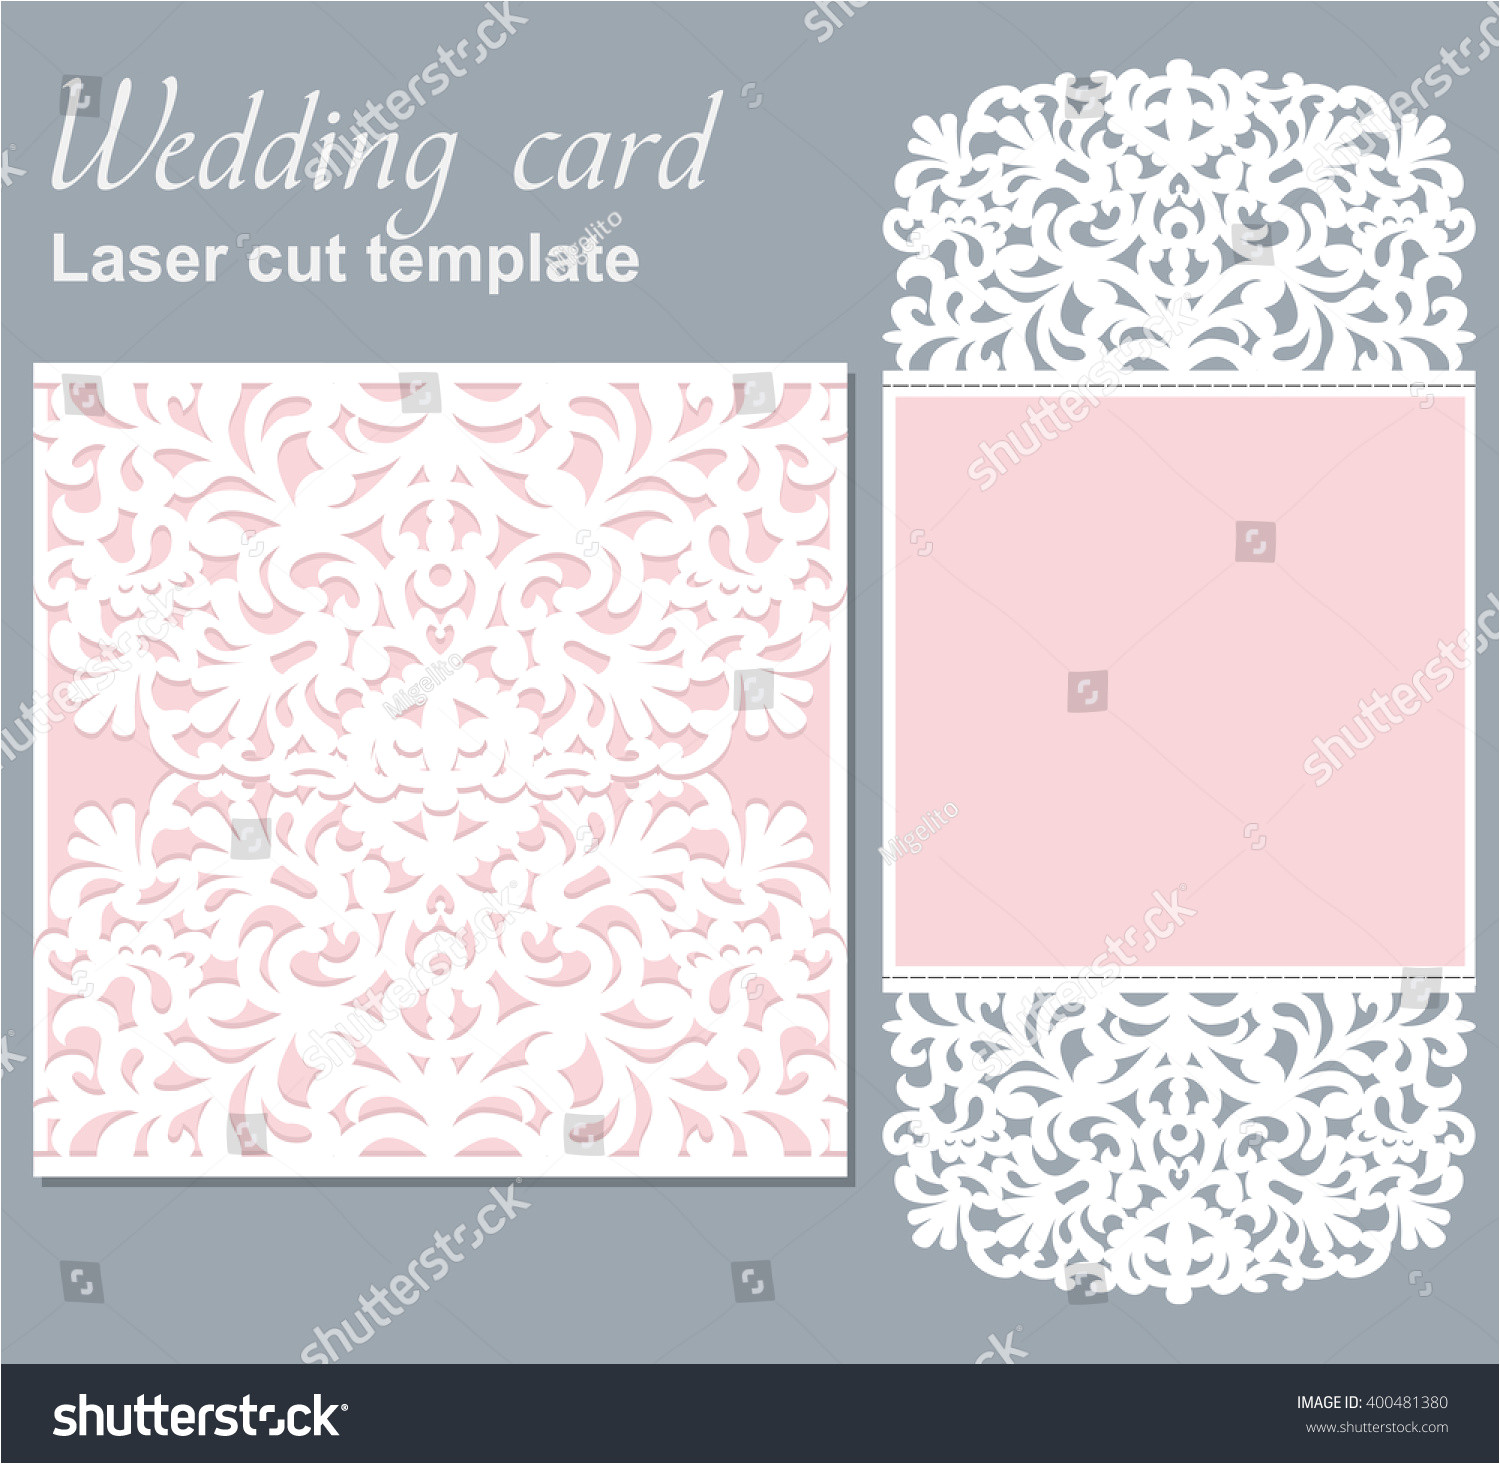 Laser Cut Wedding Invitation Card Template Vector Free Vector Die Laser Cut Wedding Card Template Wedding